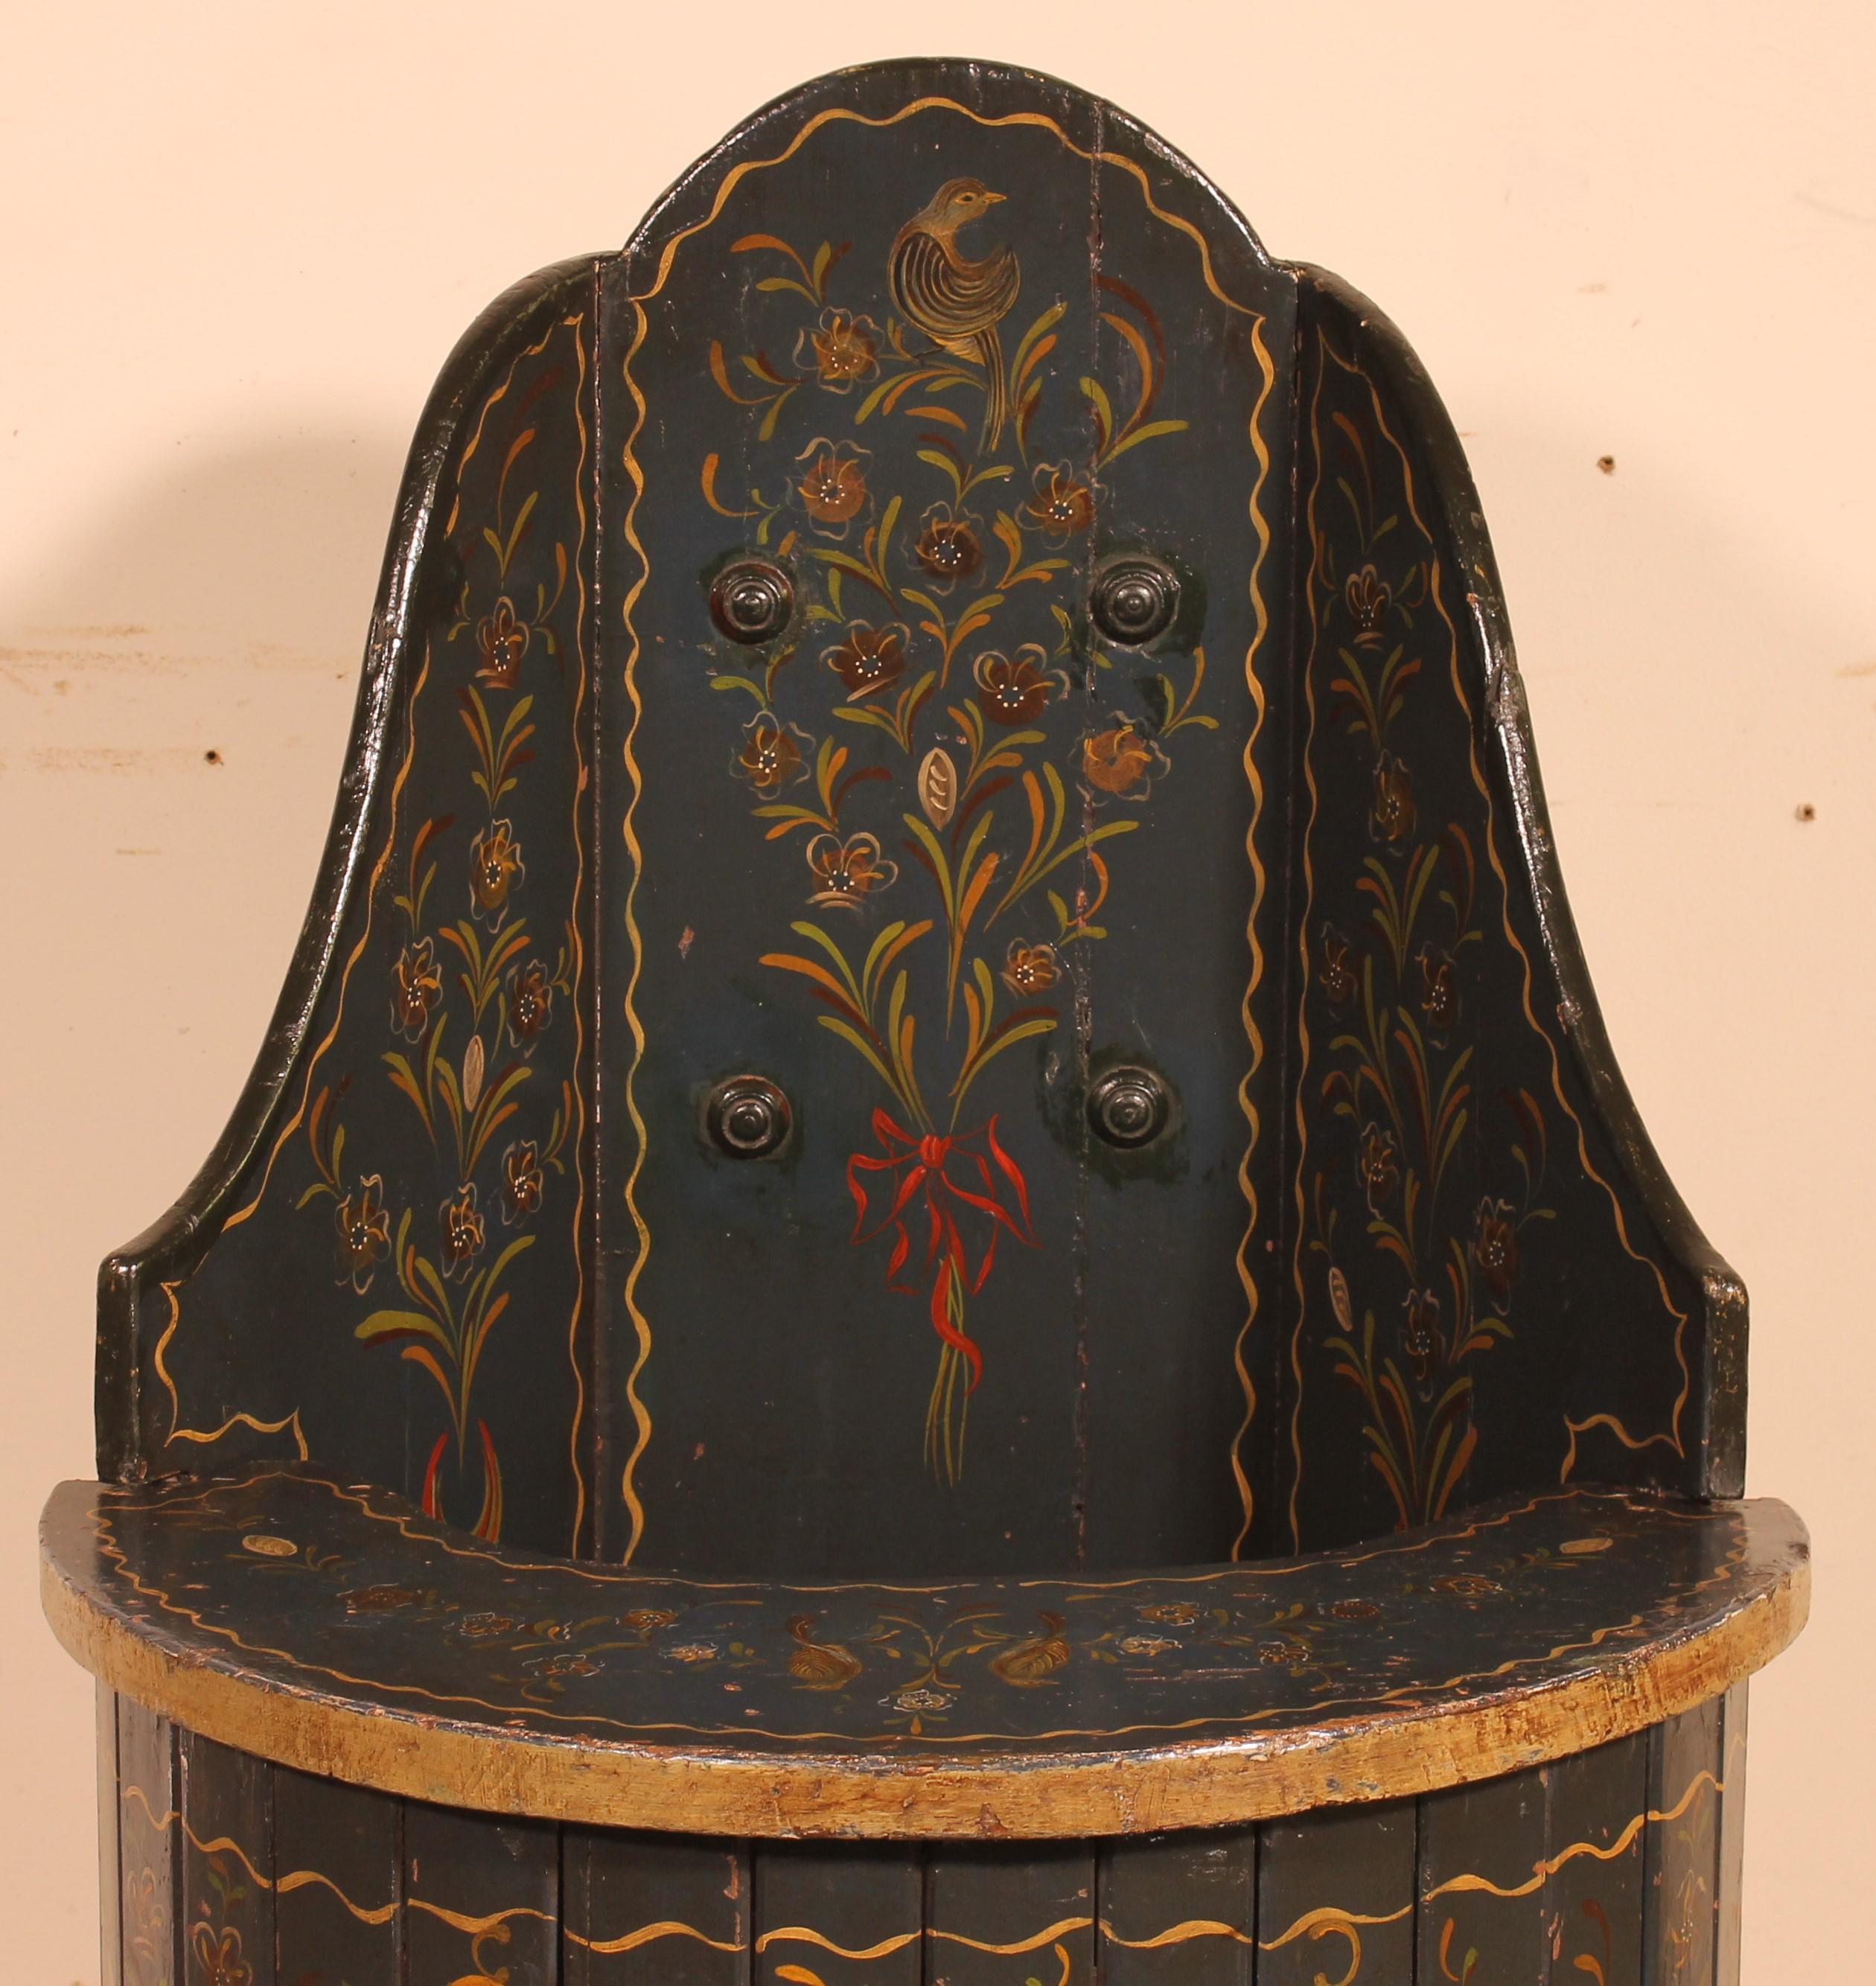 Ravissante chaise d'enfant autrichienne décorée de fleurs et d'oiseaux de la fin du 18e siècle début du 19e siècle circa 1800.

Très belle polychromie d'origine.
La partie inférieure est munie d'une petite porte et le plateau de la table peut être